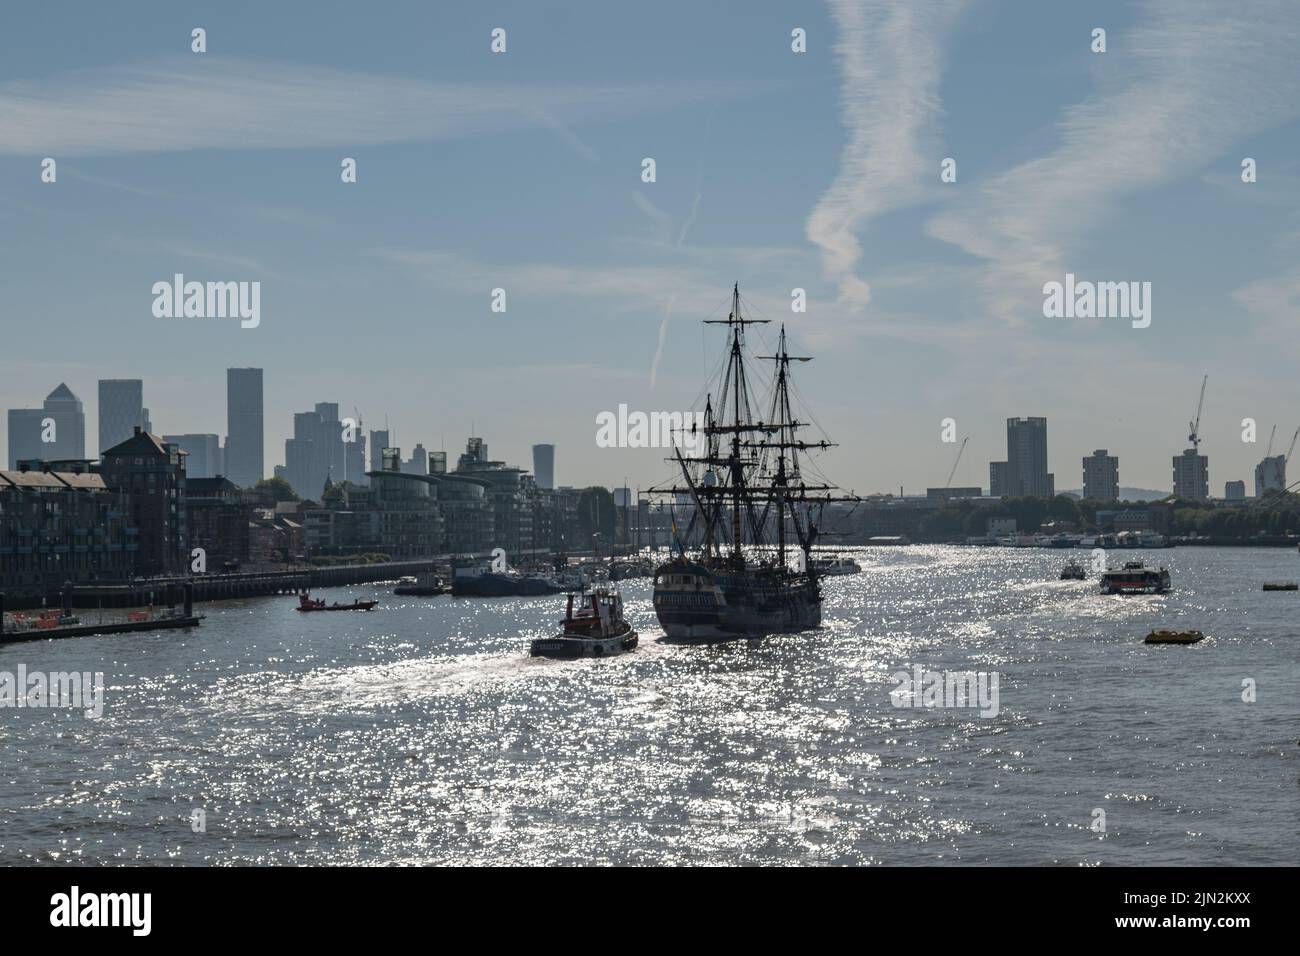 Le grand navire Göteborg de Suède part vers son quai de South Dock, Canary Wharf après avoir traversé le Tower Bridge, escorté par le remorqueur Christine. Banque D'Images